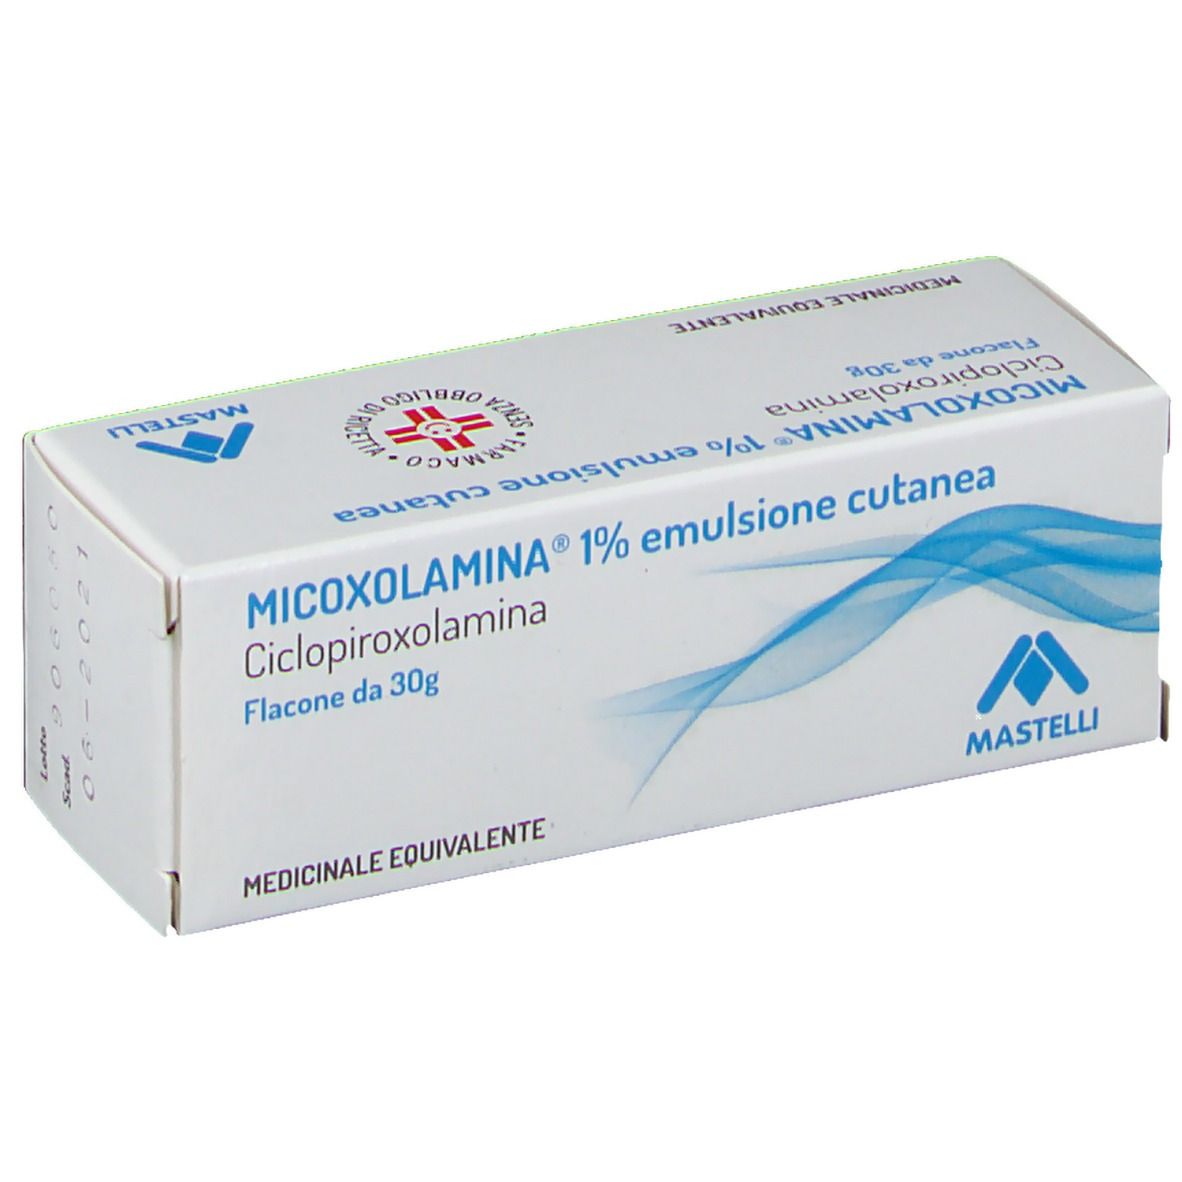 MICOXOLAMINA® 1% Emulsione Cutanea